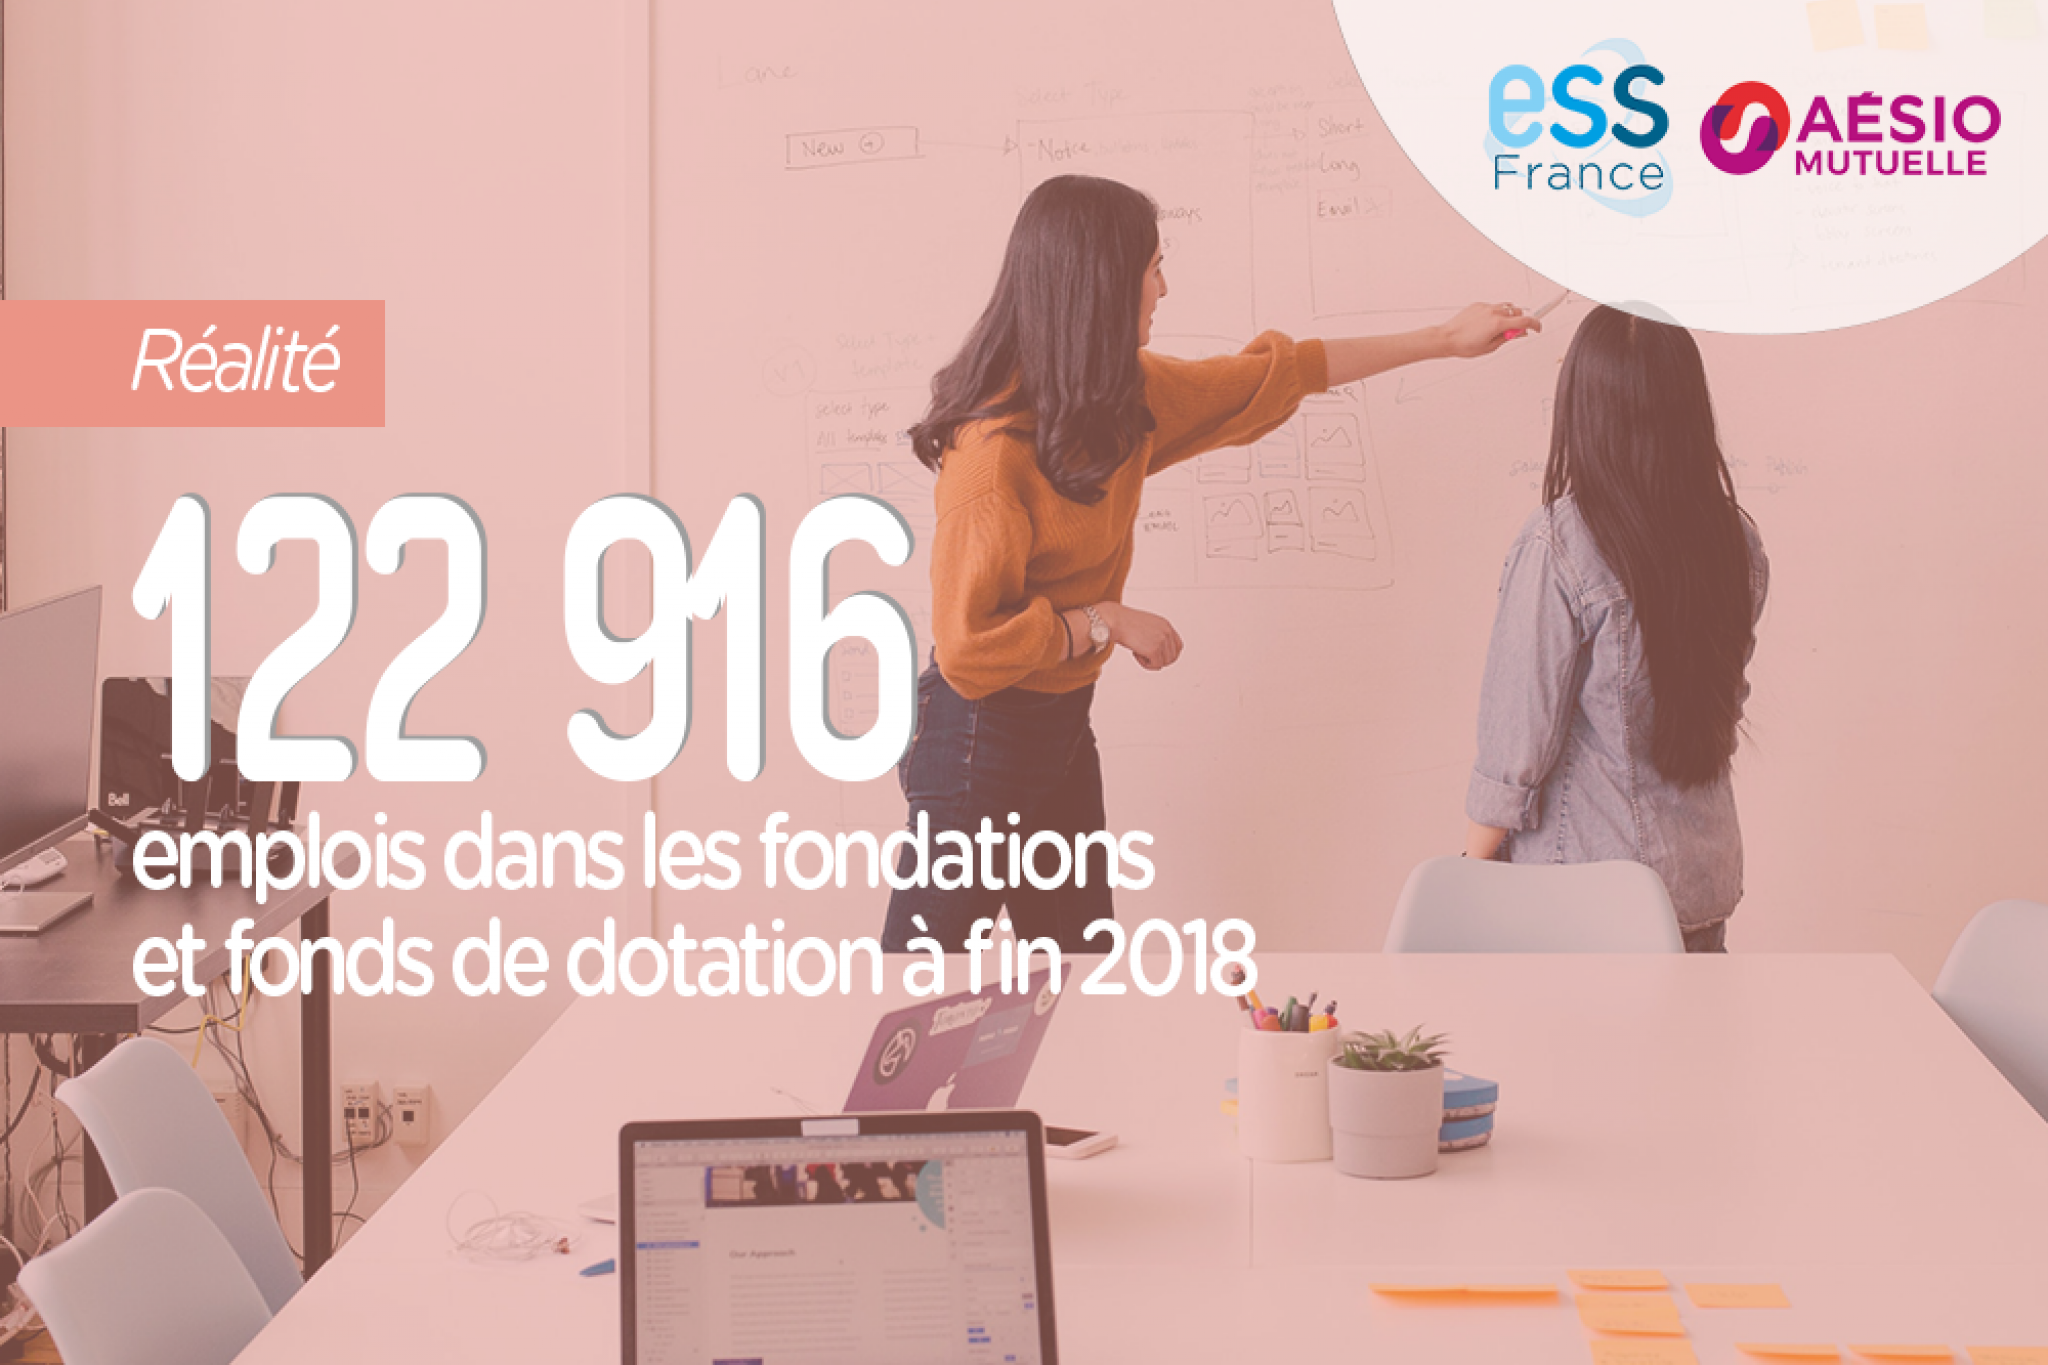 122 916 emplois dans les fondations et fonds de dotation à fin 2018